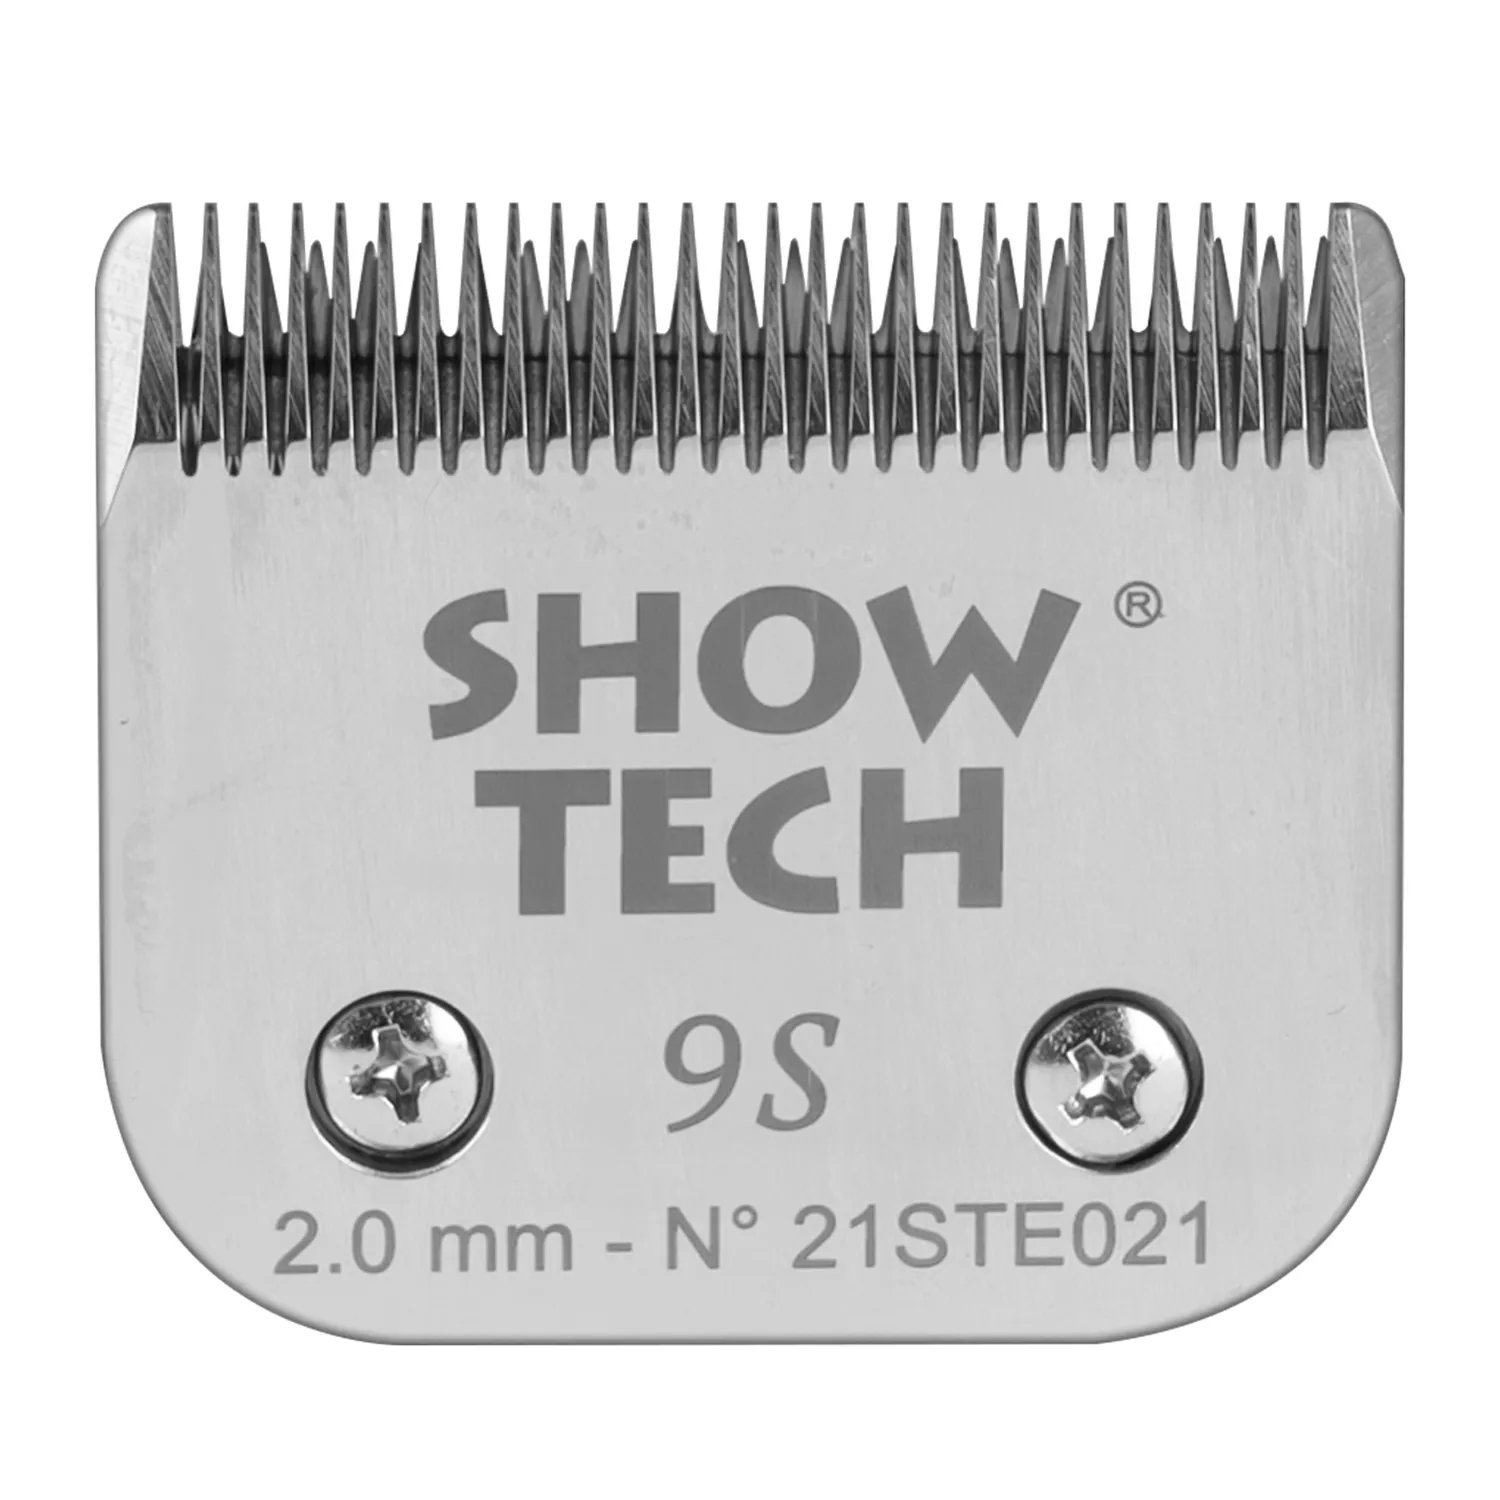 SHOW TECH Pro Blades ножевой блок съемный #9S для машинок стандарта А5/А6 (высота среза 2,0 мм)